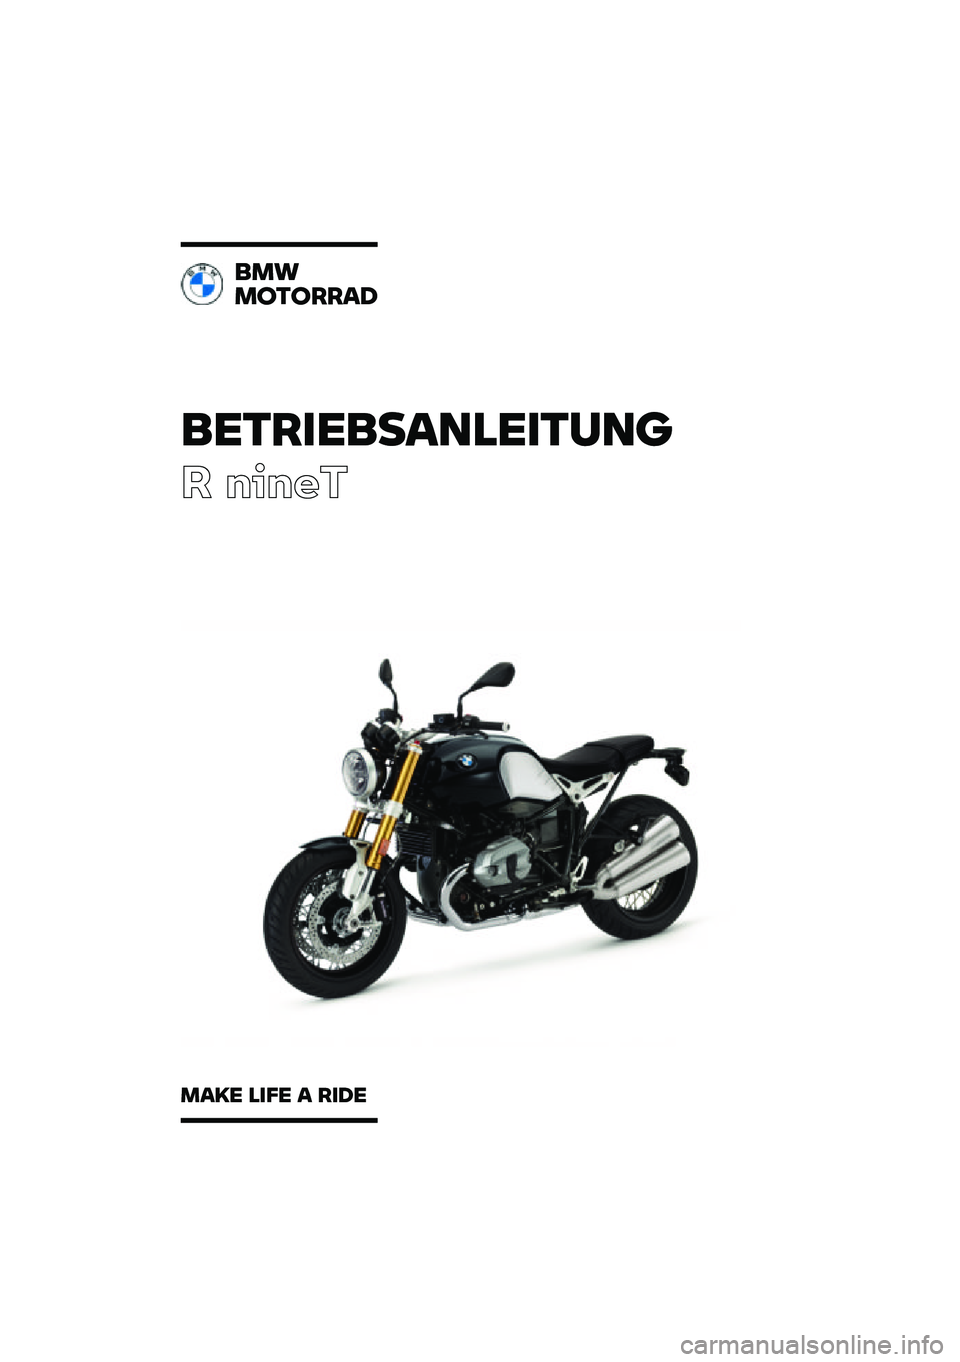 BMW MOTORRAD R NINE T 2021  Betriebsanleitung (in German) ���������\b�	�
�����	�\f
� �����
��
�
�
������\b�
�
�\b�� �
��� �\b ���� 